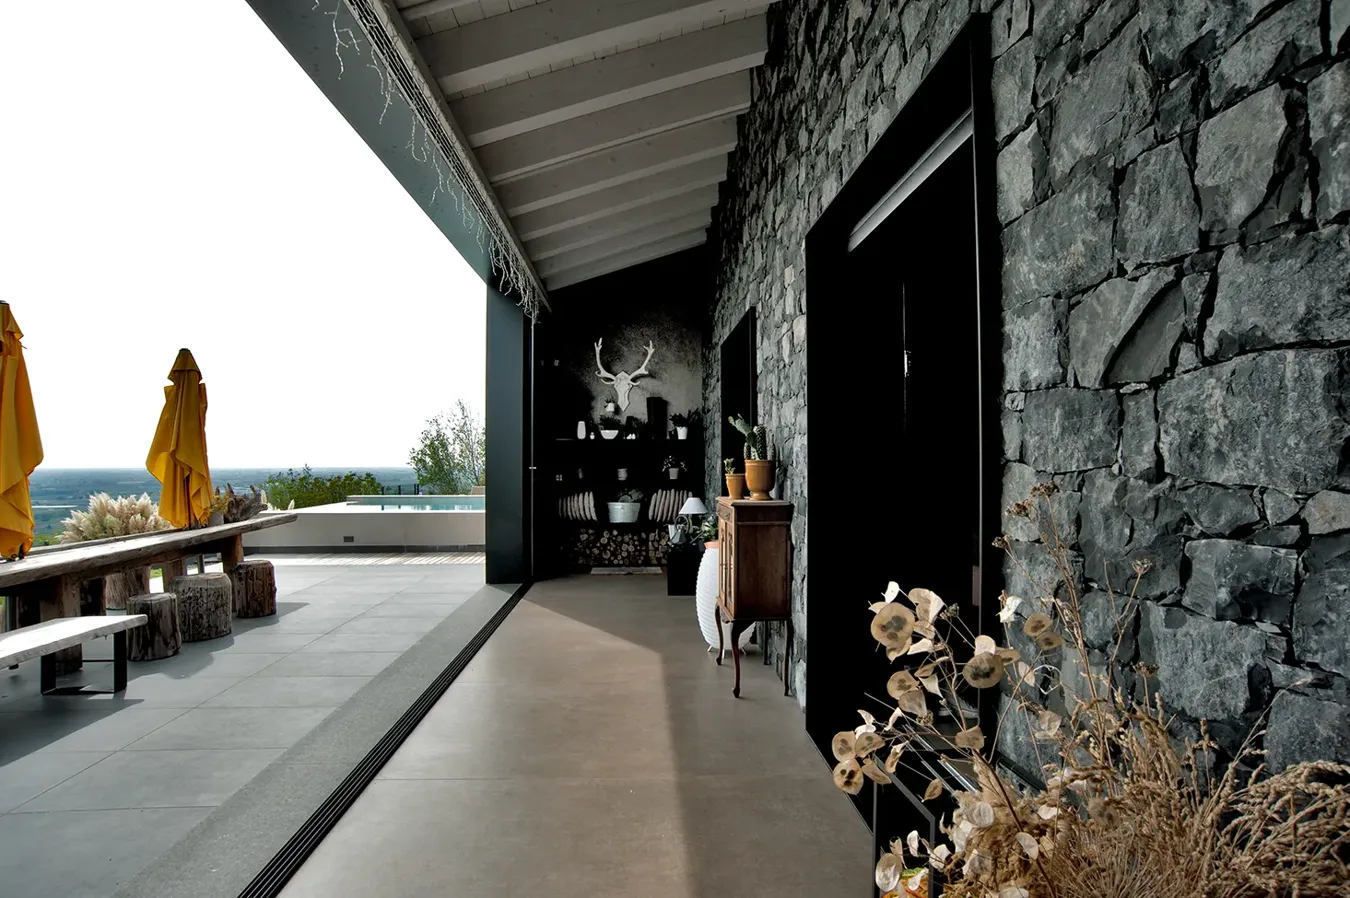 Schicke Terrasse mit Ivory Betoneffekt-Fliesen aus der Moov-Kollektion, Steinwand und Meerblick.